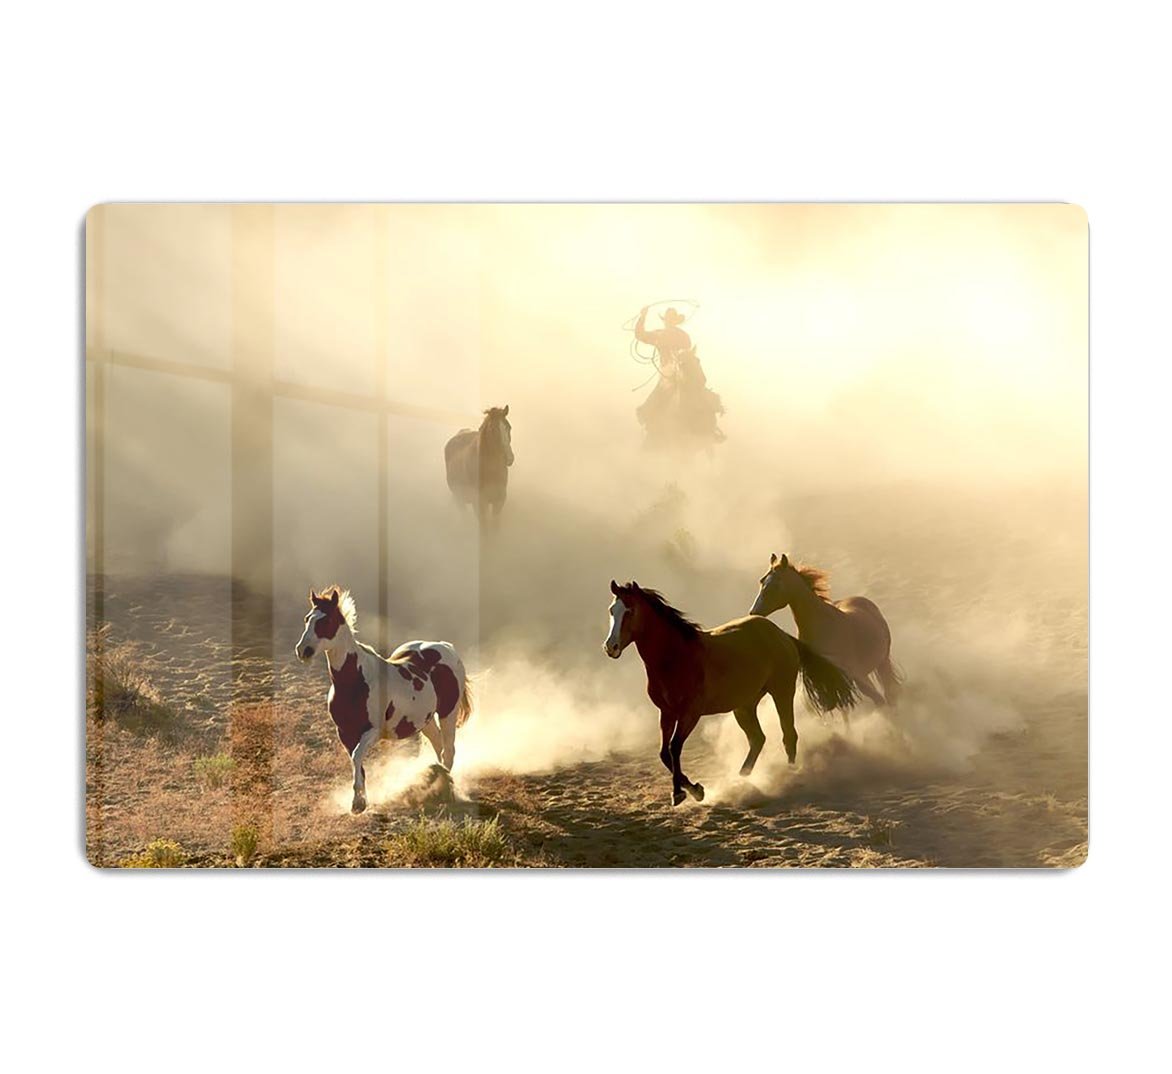 Sunlight Horses and cowboy HD Metal Print - Canvas Art Rocks - 1